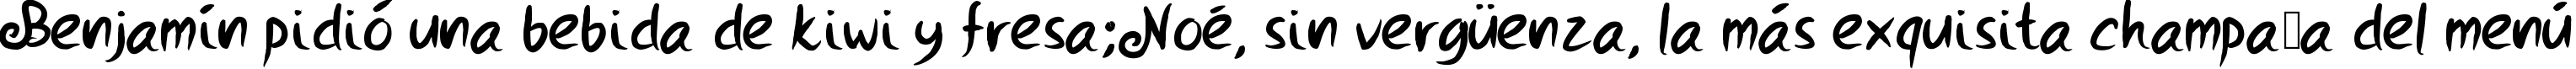 Пример написания шрифтом PWStrokes текста на испанском